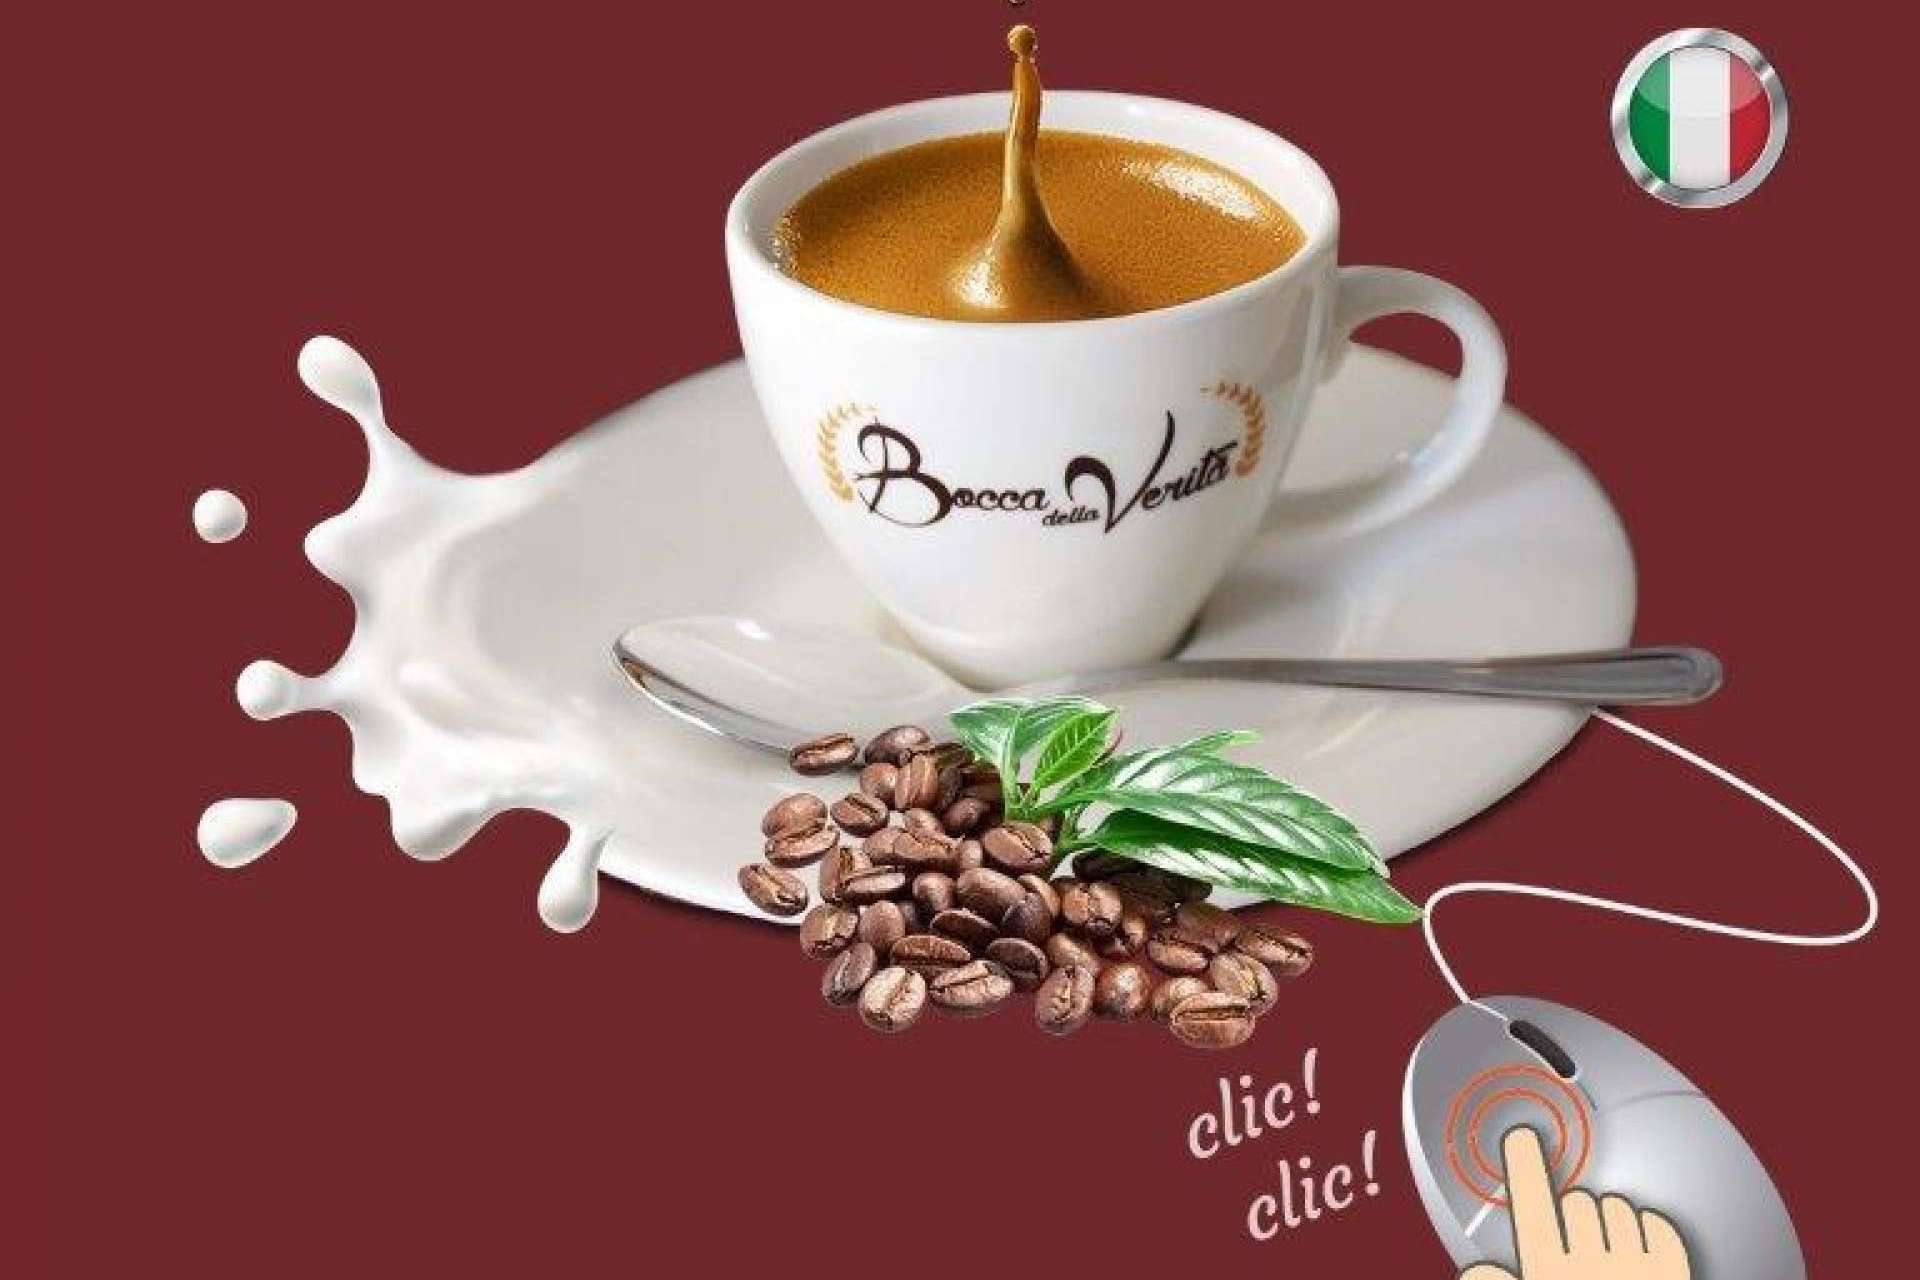 Las claves para reconocer un buen café, por Bocca Della Verità